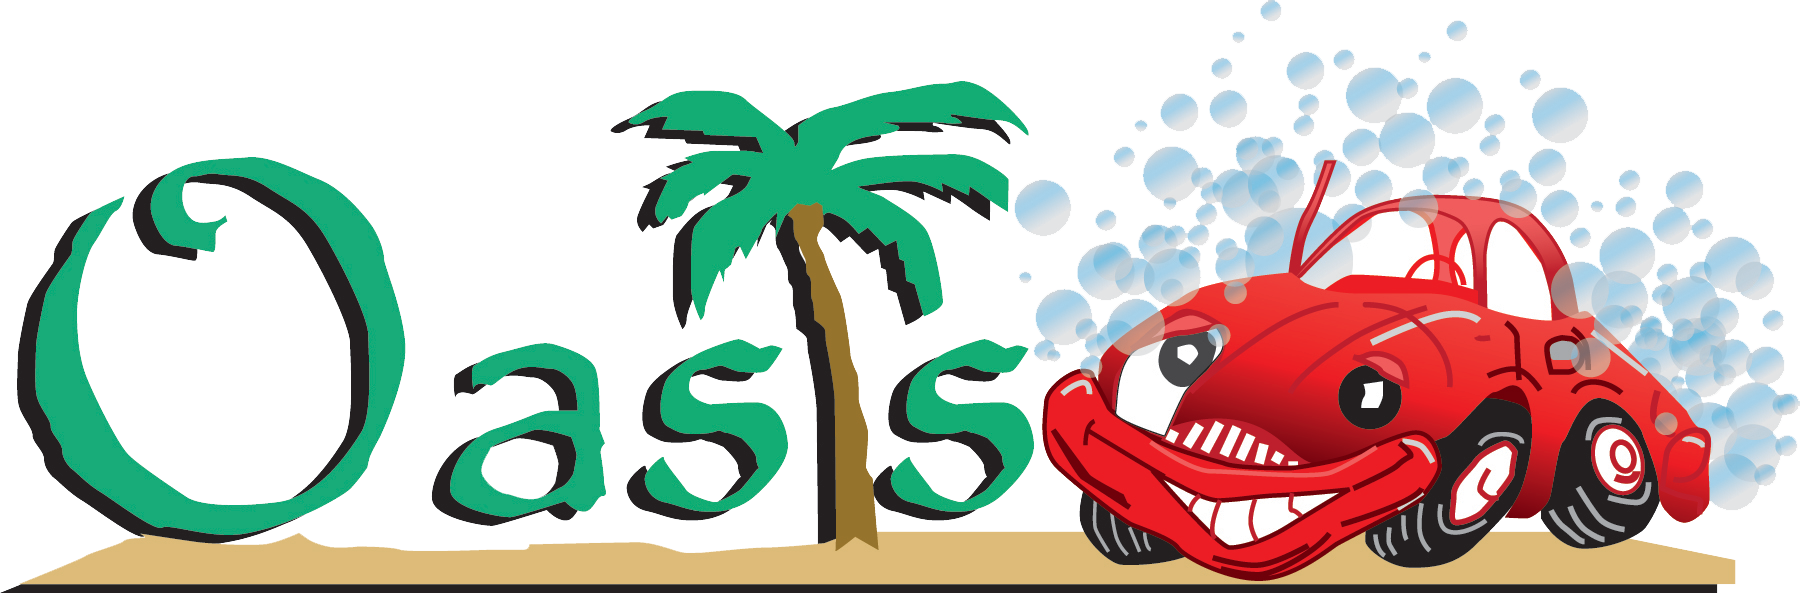 Oasis Auto Spa Car Wash